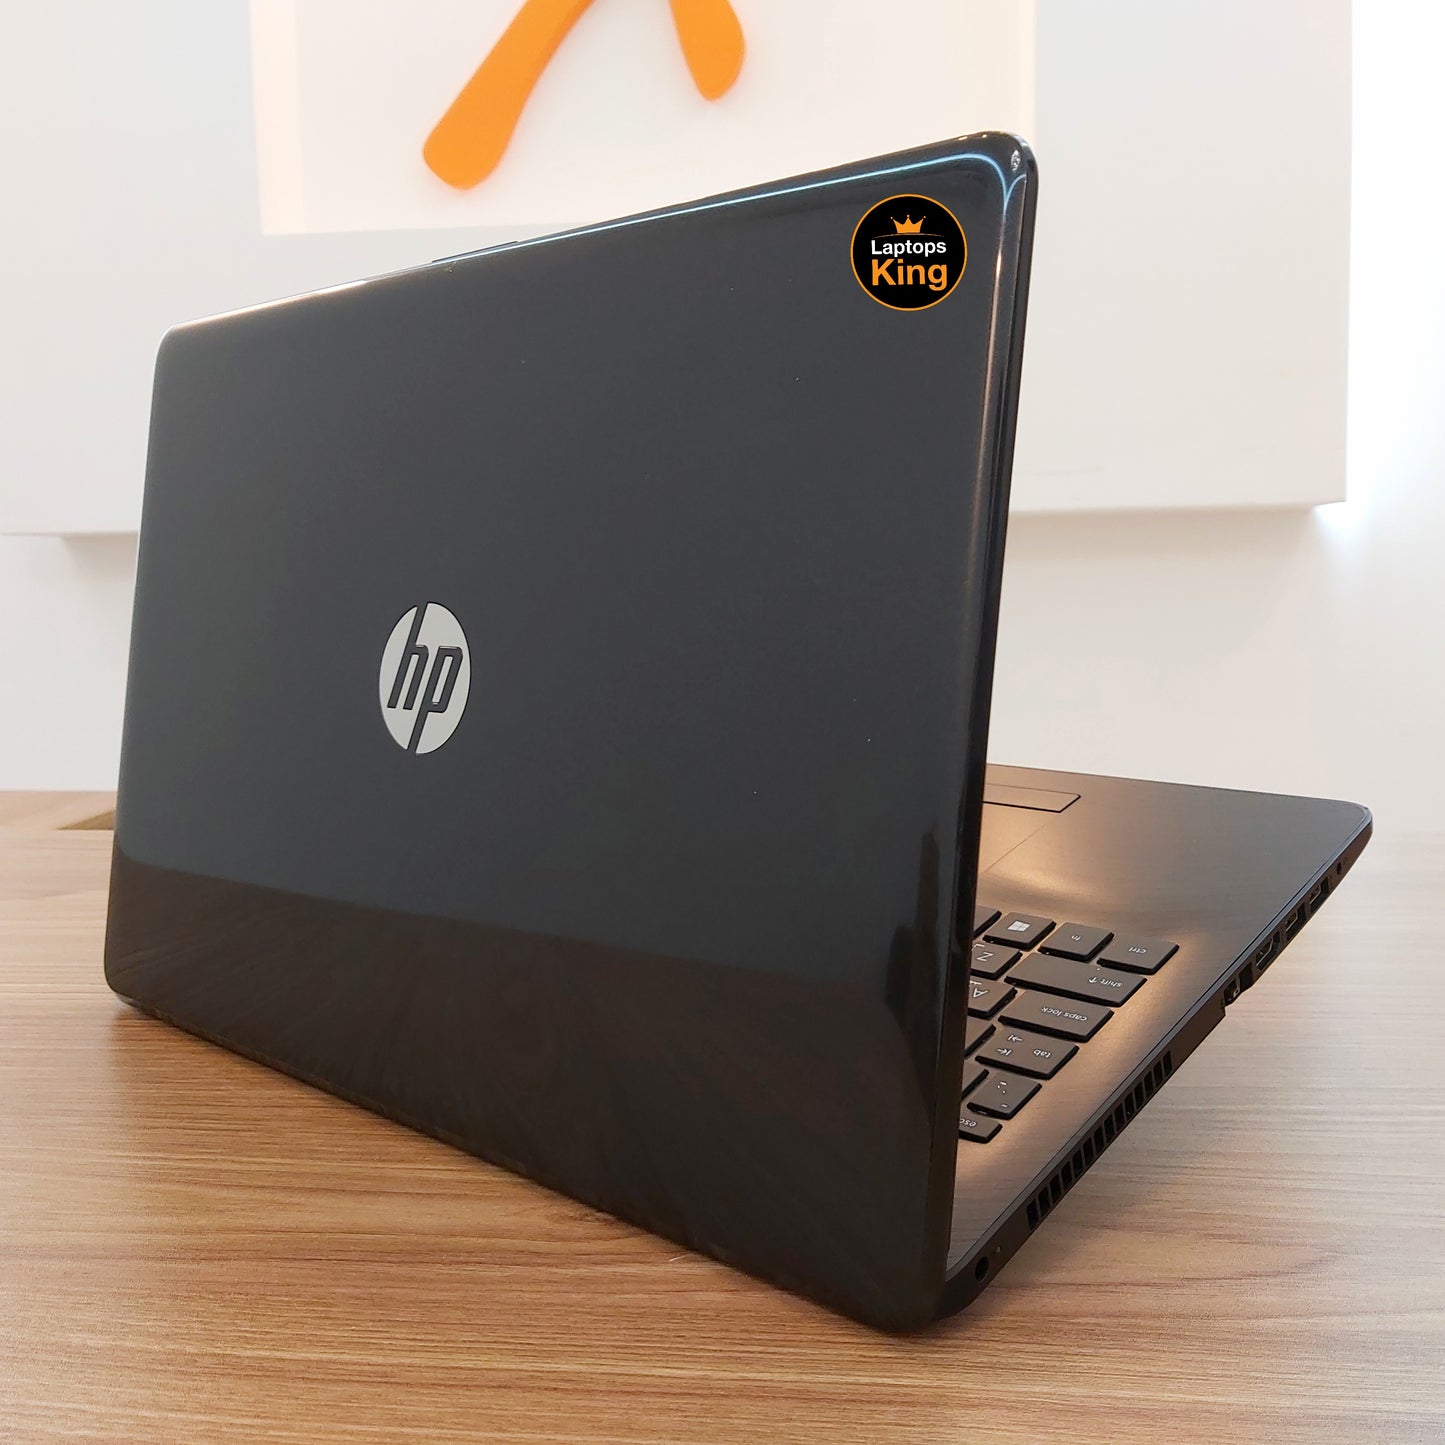 HP 15-Bs0 i5-7200u Laptop (Used Very Clean)